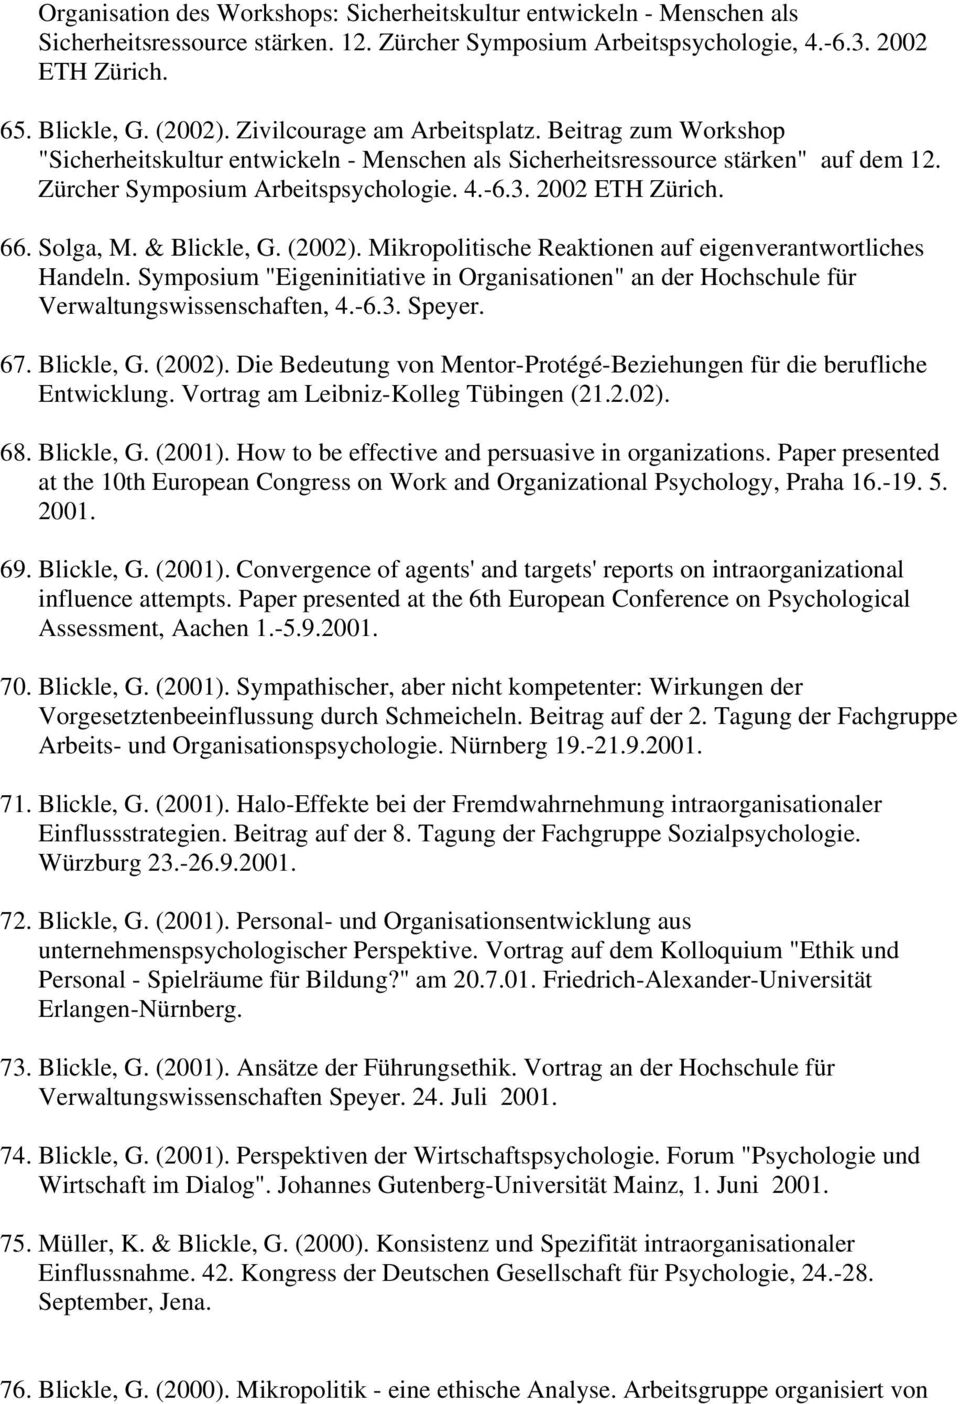 66. Solga, M. & Blickle, G. (2002). Mikropolitische Reaktionen auf eigenverantwortliches Handeln. Symposium "Eigeninitiative in Organisationen" an der Hochschule für Verwaltungswissenschaften, 4.-6.3.